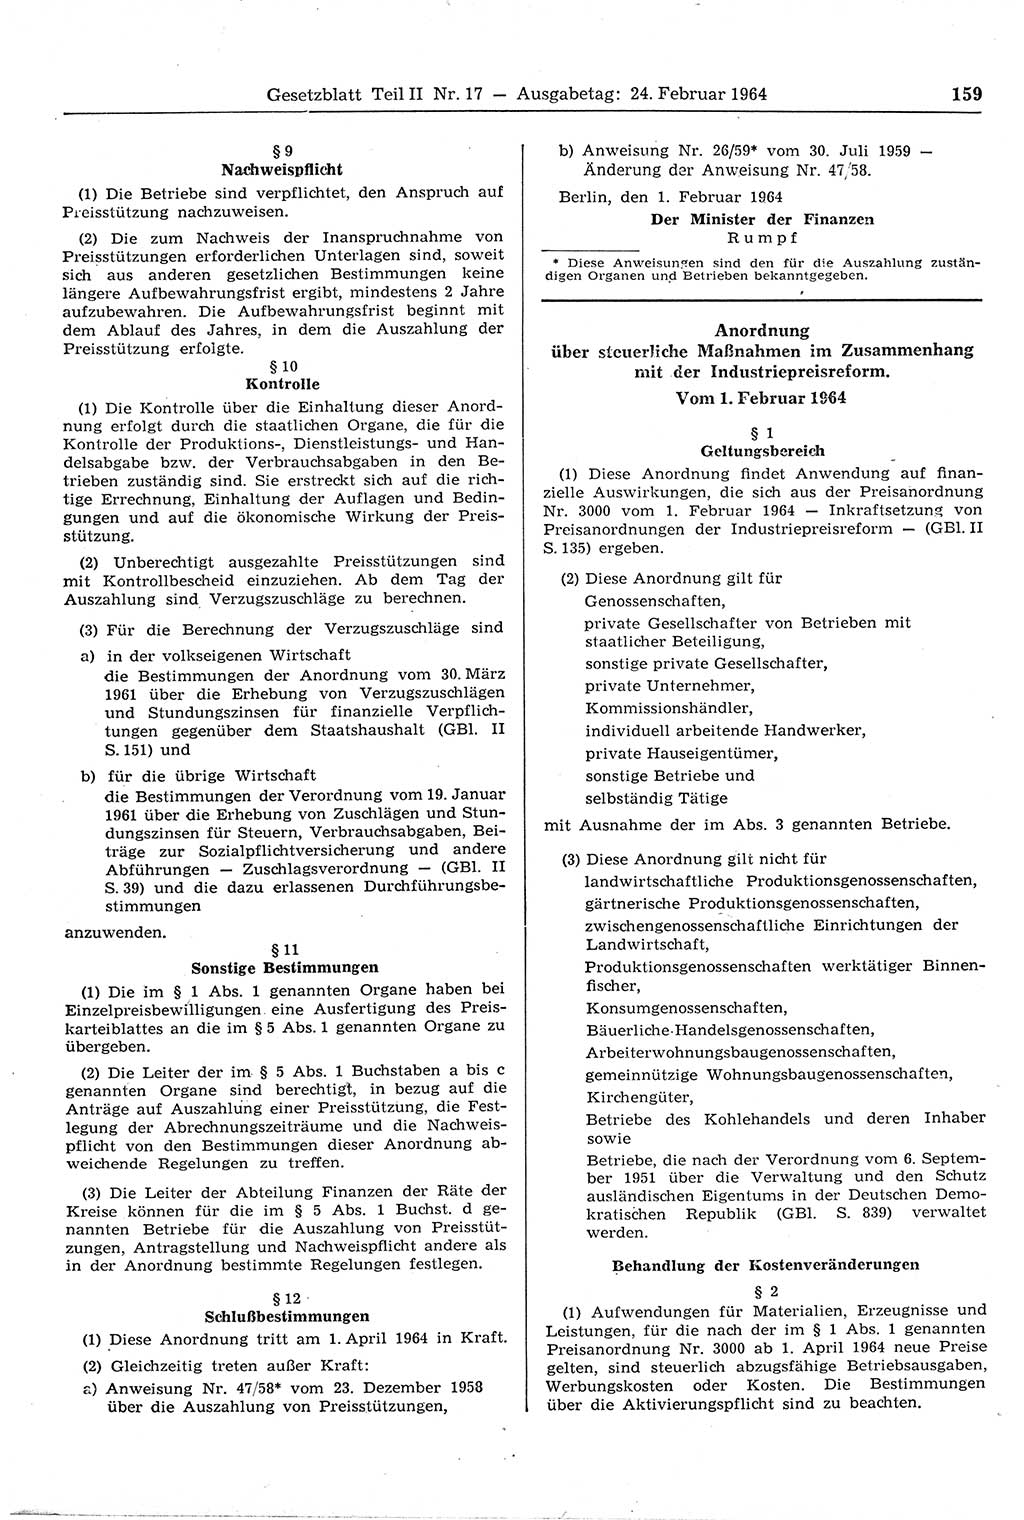 Gesetzblatt (GBl.) der Deutschen Demokratischen Republik (DDR) Teil ⅠⅠ 1964, Seite 159 (GBl. DDR ⅠⅠ 1964, S. 159)